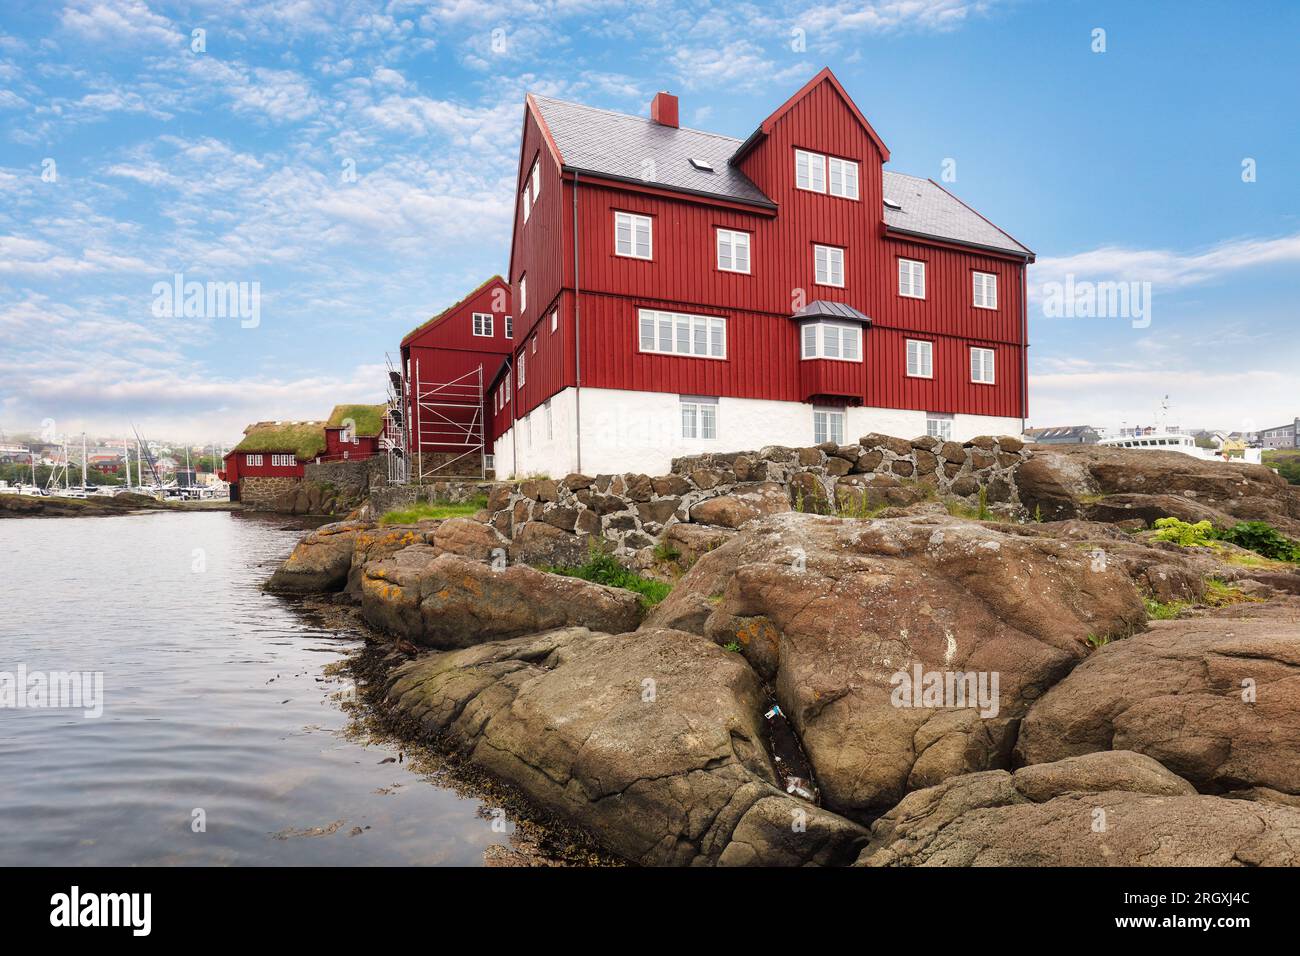 Quelques bâtiments anciens et traditionnels à Tinganes, Torshavn, îles Féroé, Danemark. Banque D'Images